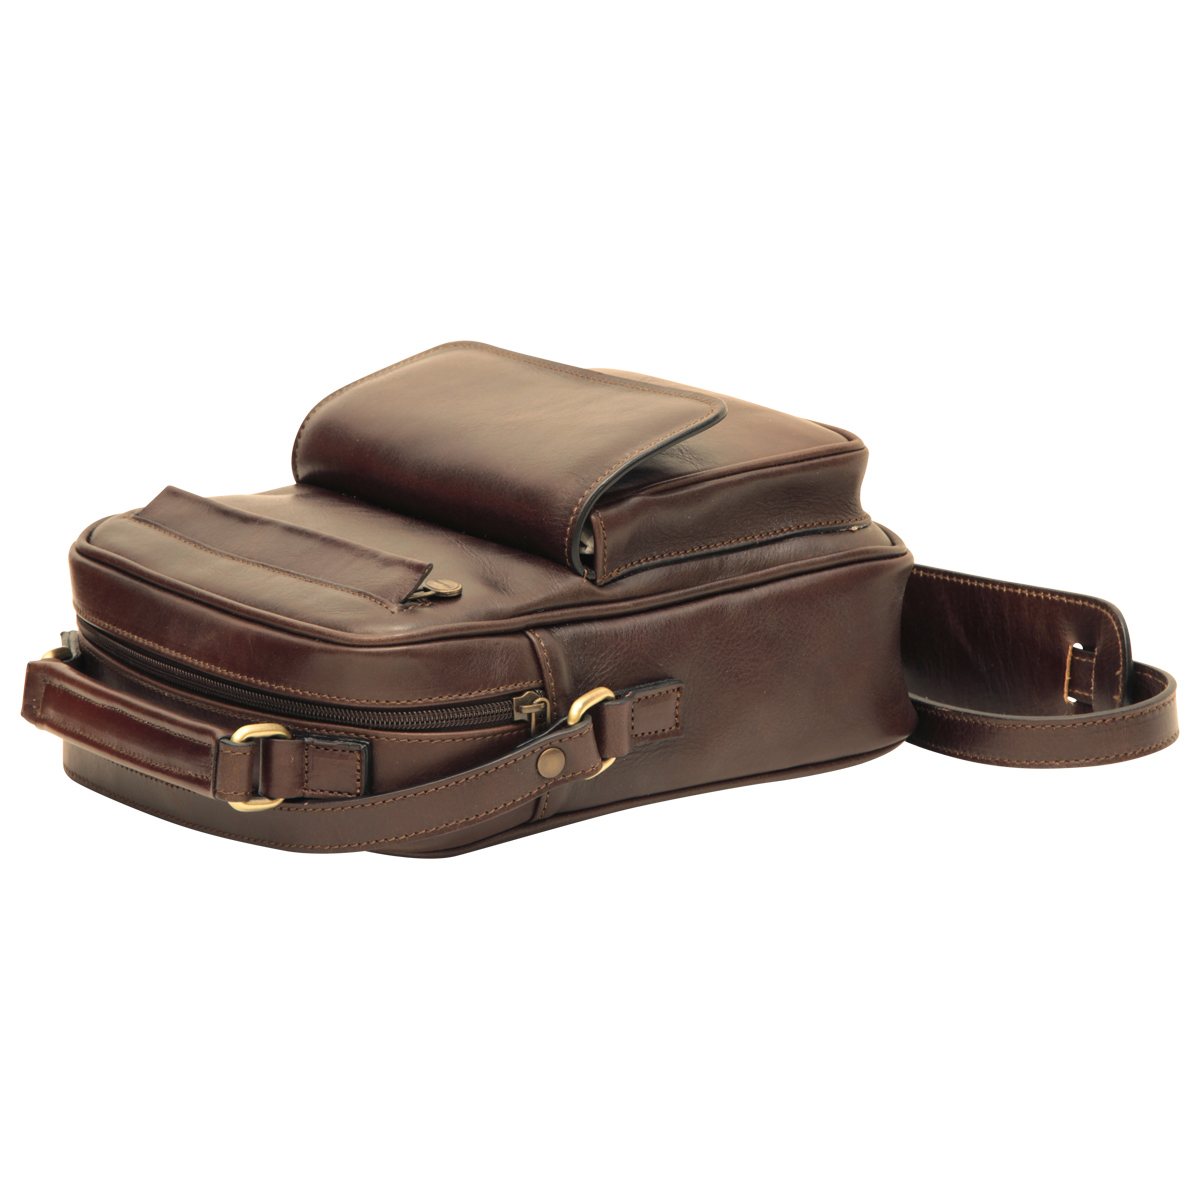 Leather Shoulder Bag with front pocket - Dark Brown | 056489TM | EURO | Old Angler Firenze